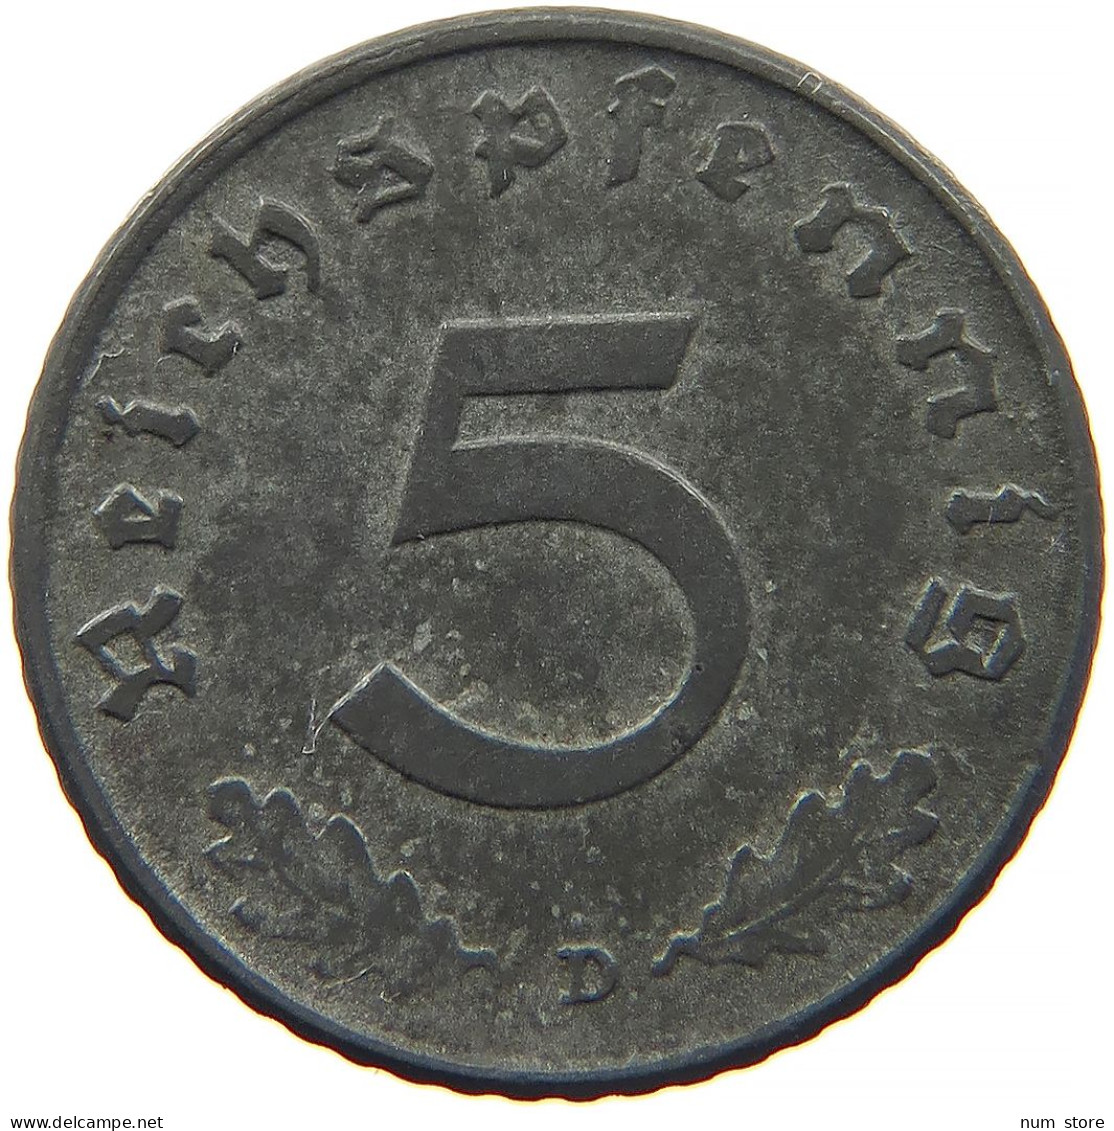 GERMANY 5 REICHSPFENNIG 1941 D #s091 0881 - 5 Reichspfennig